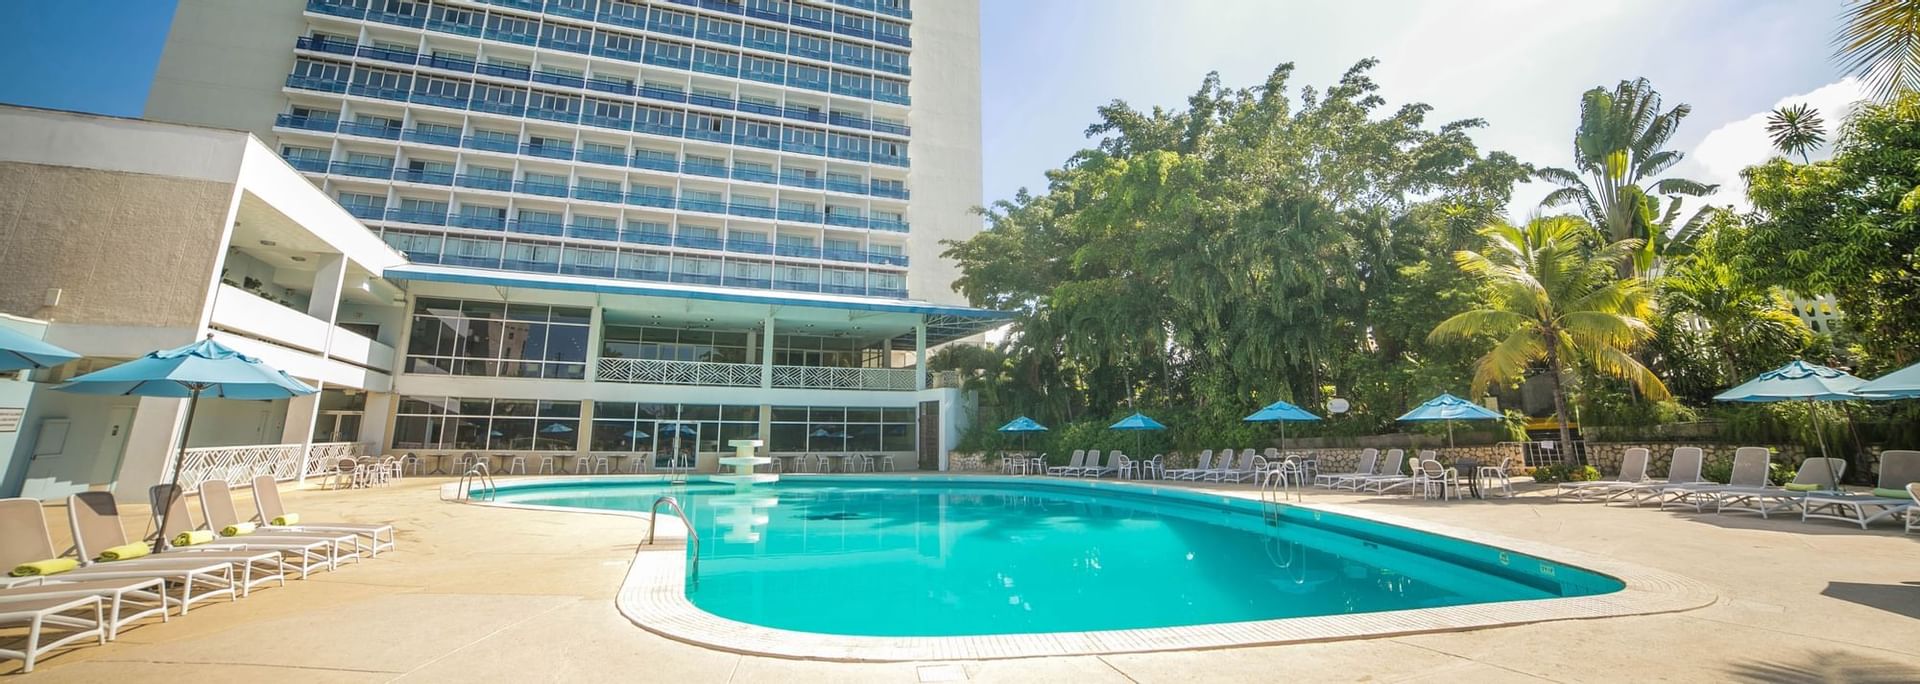 Panorama image of the pool at Jamaica Pegasus Hotel 